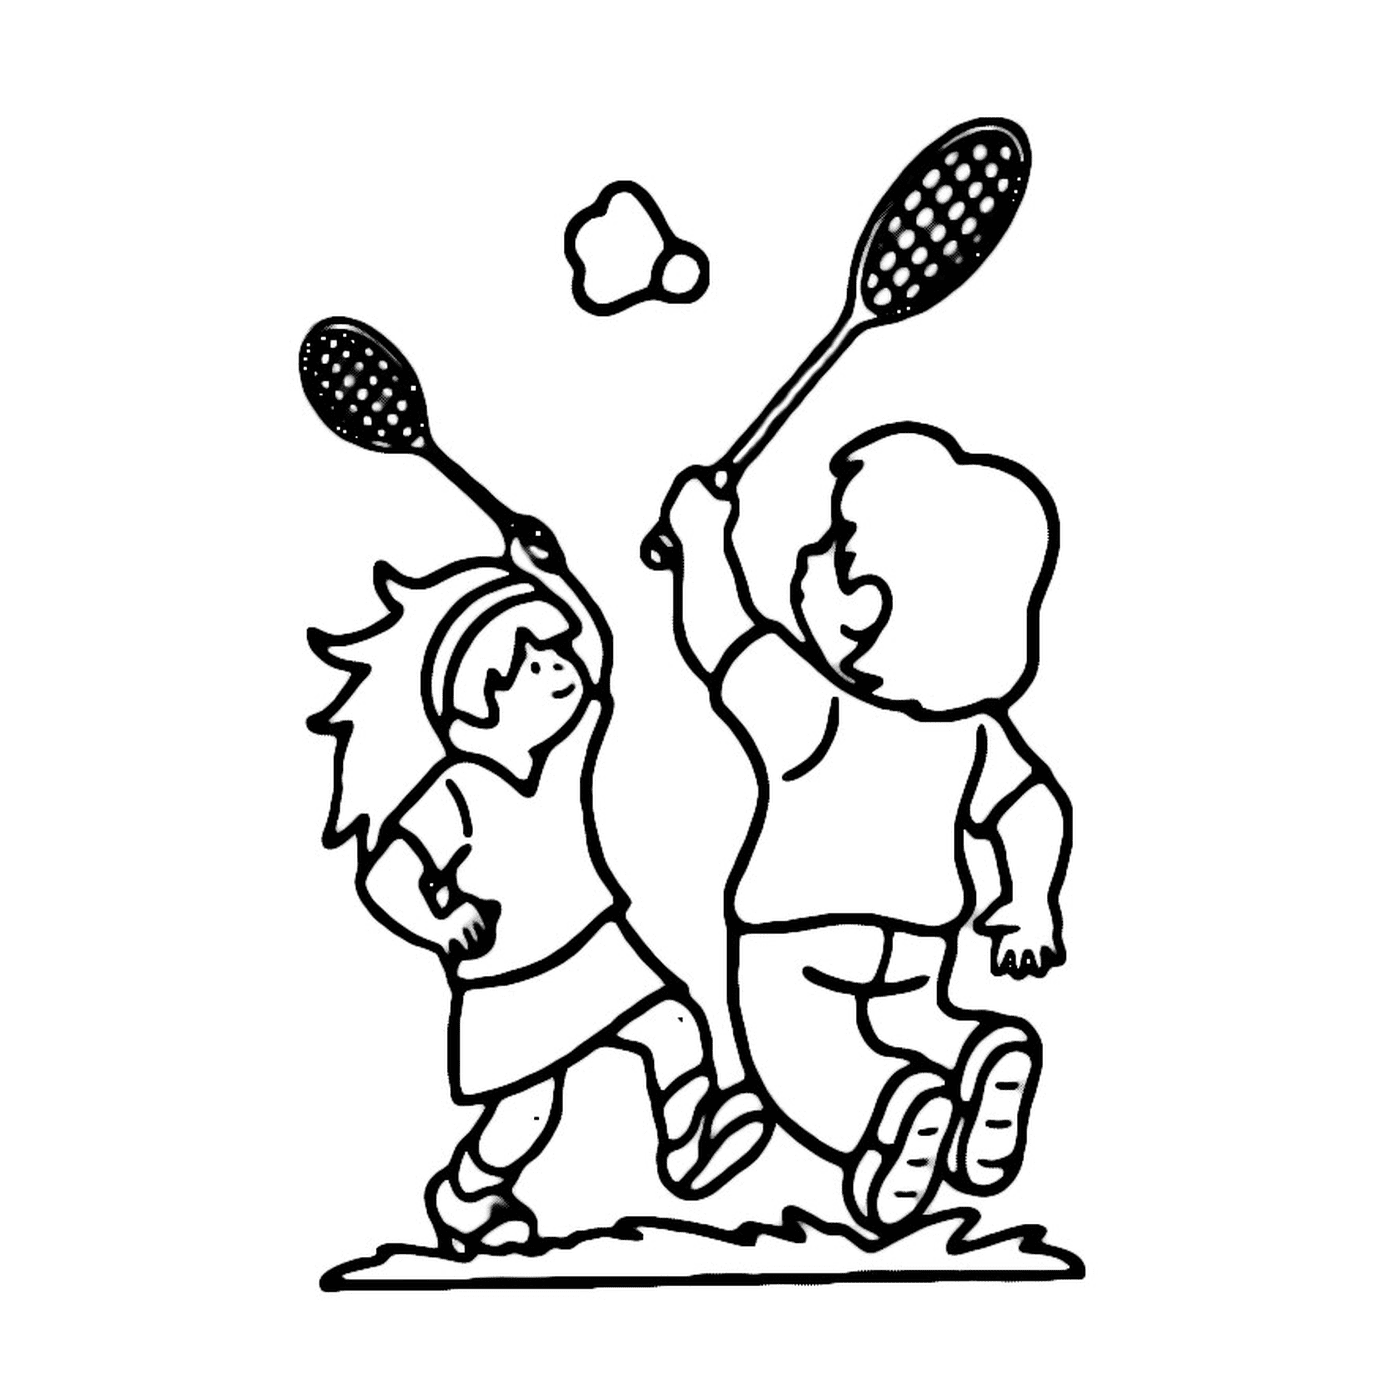   Deux enfants jouent au badminton dans un champ 